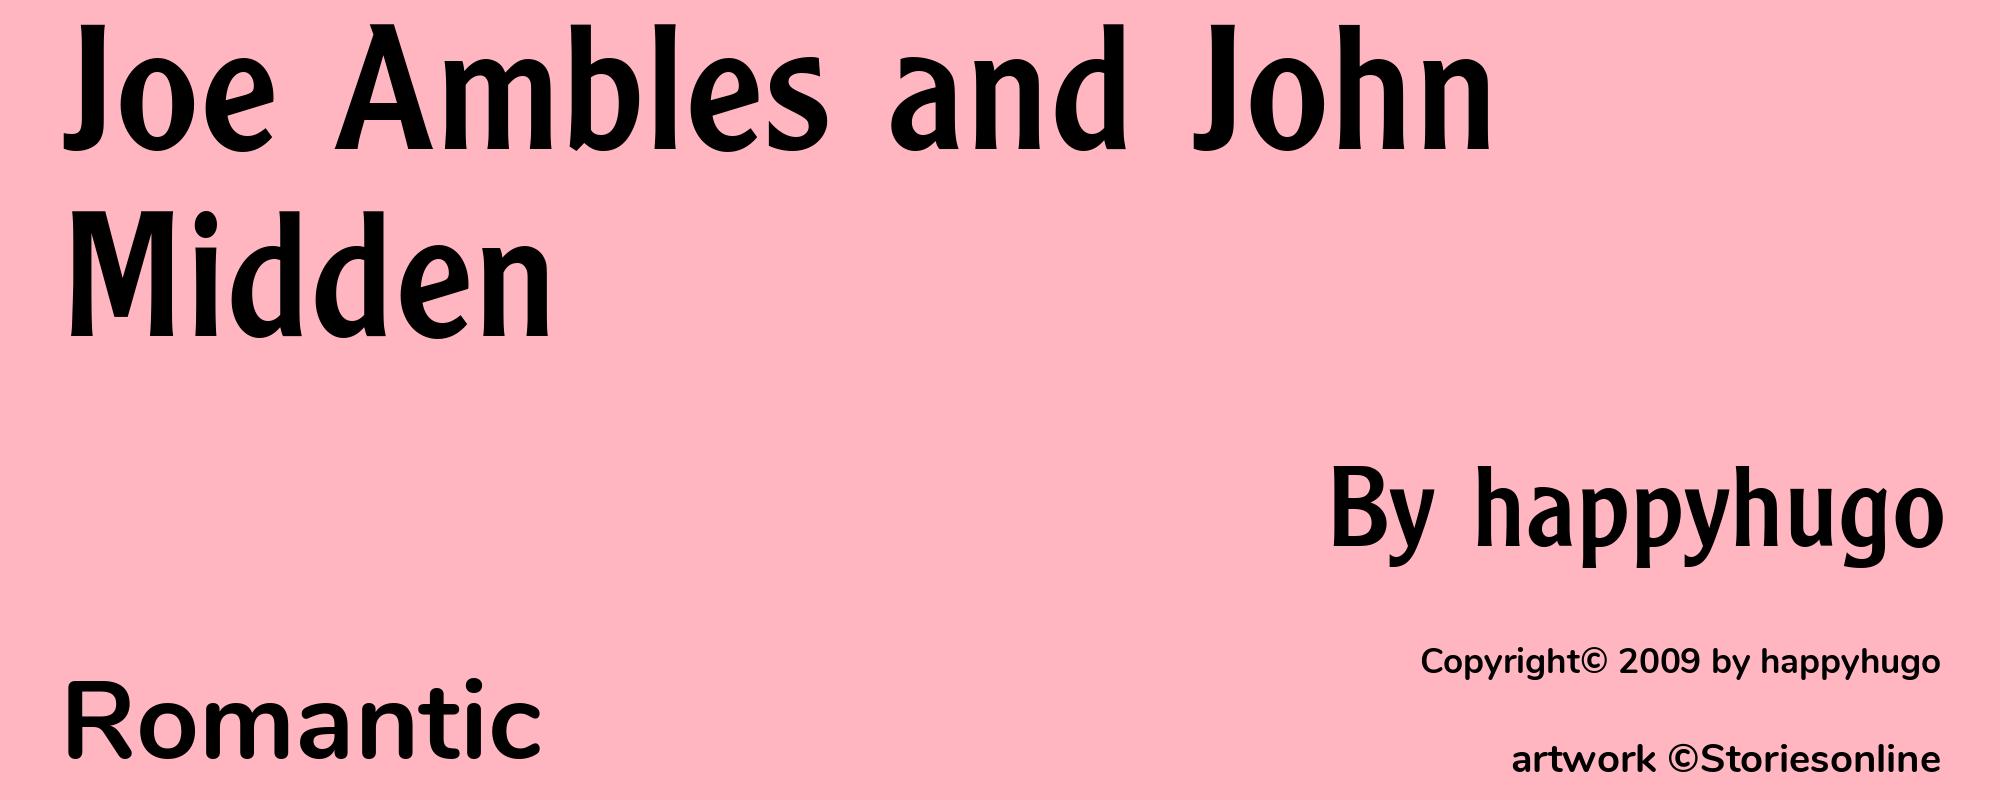 Joe Ambles and John Midden - Cover